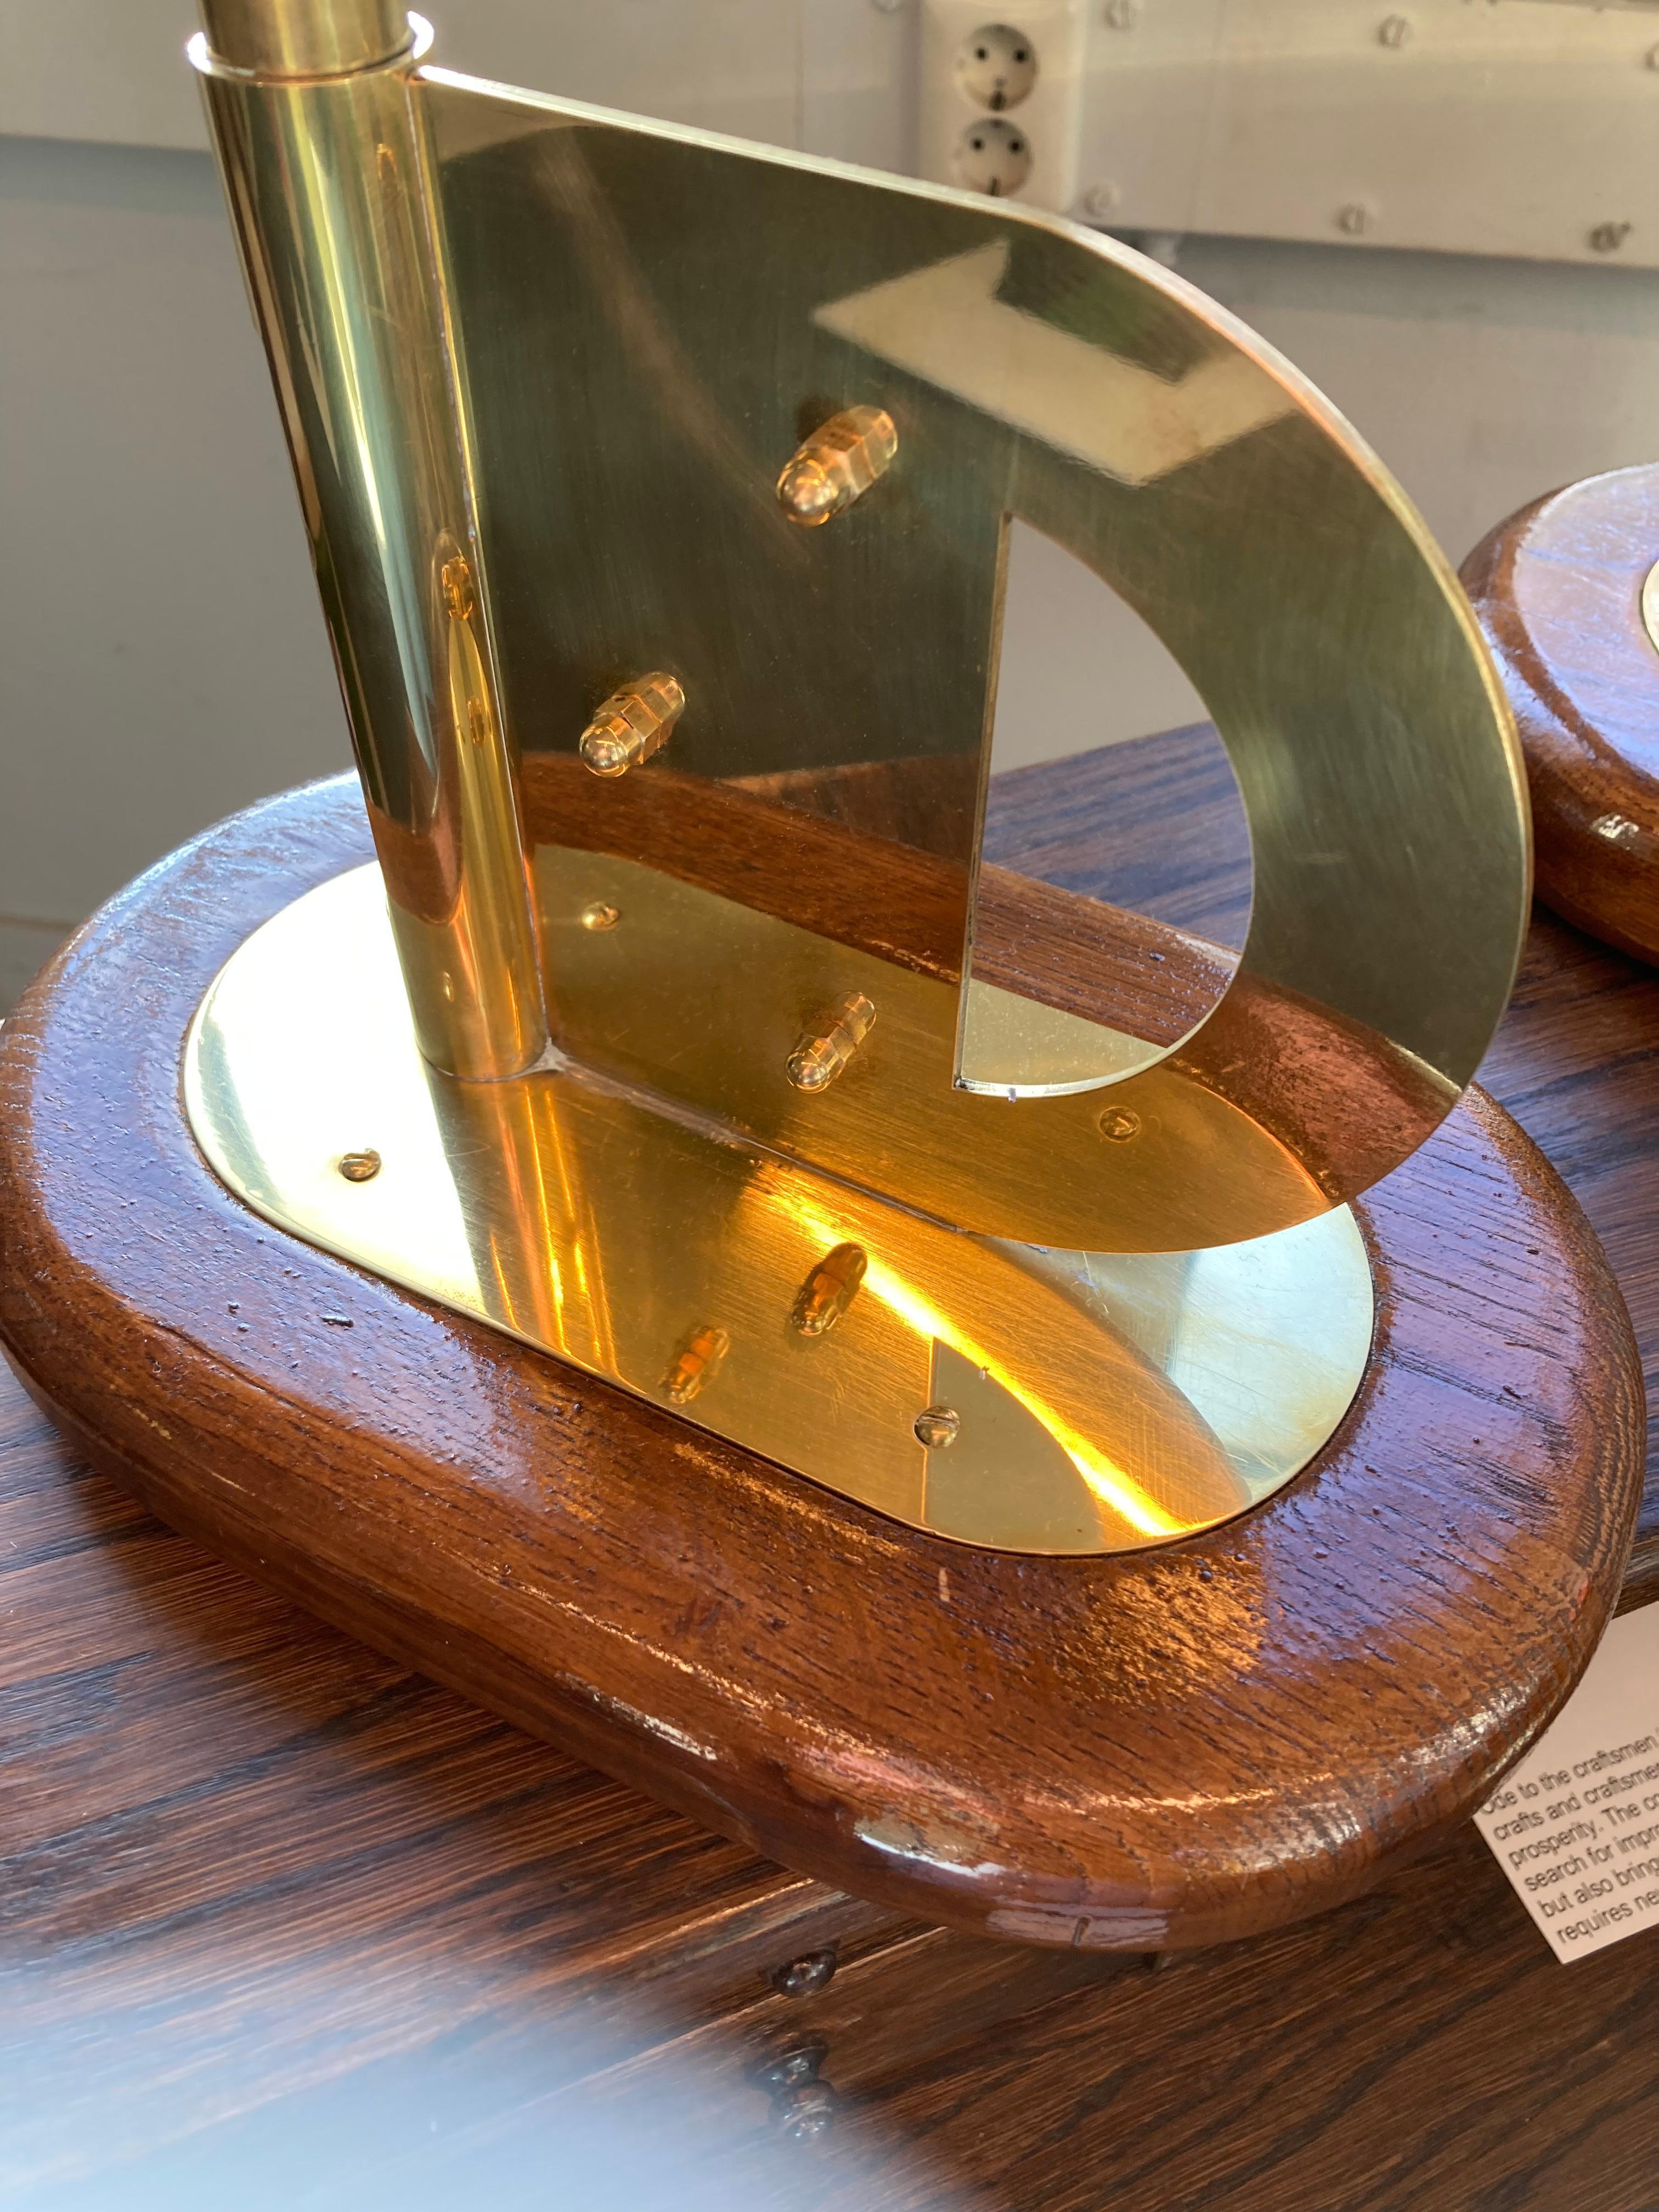 Contemporary Dutch Design Harm De Veer Candleholder brass wood oak handmade For Sale 6